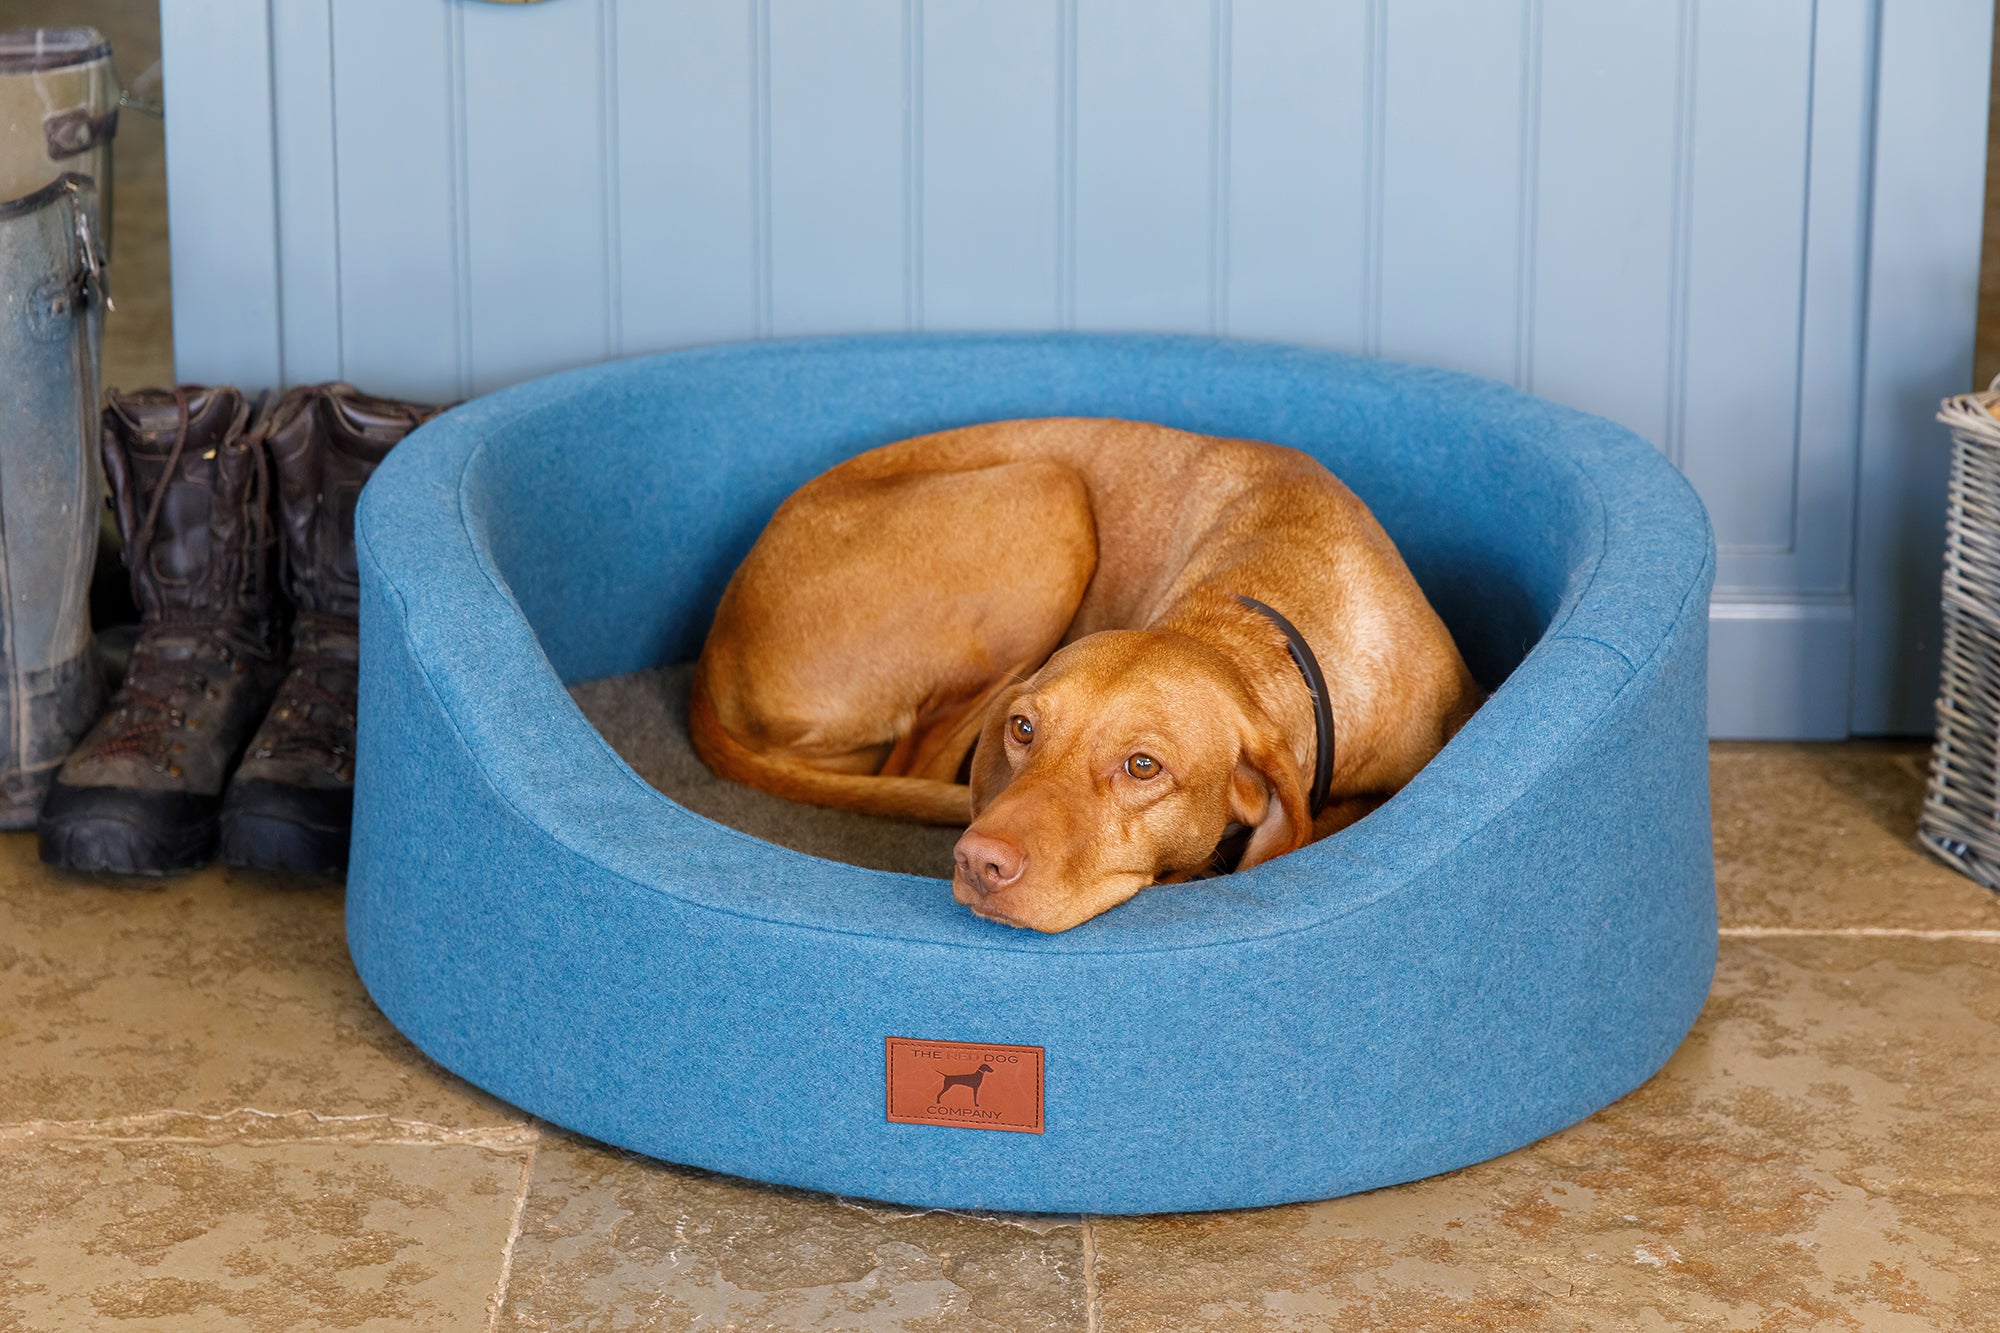 Cerulean Blue Oval Dog Bed